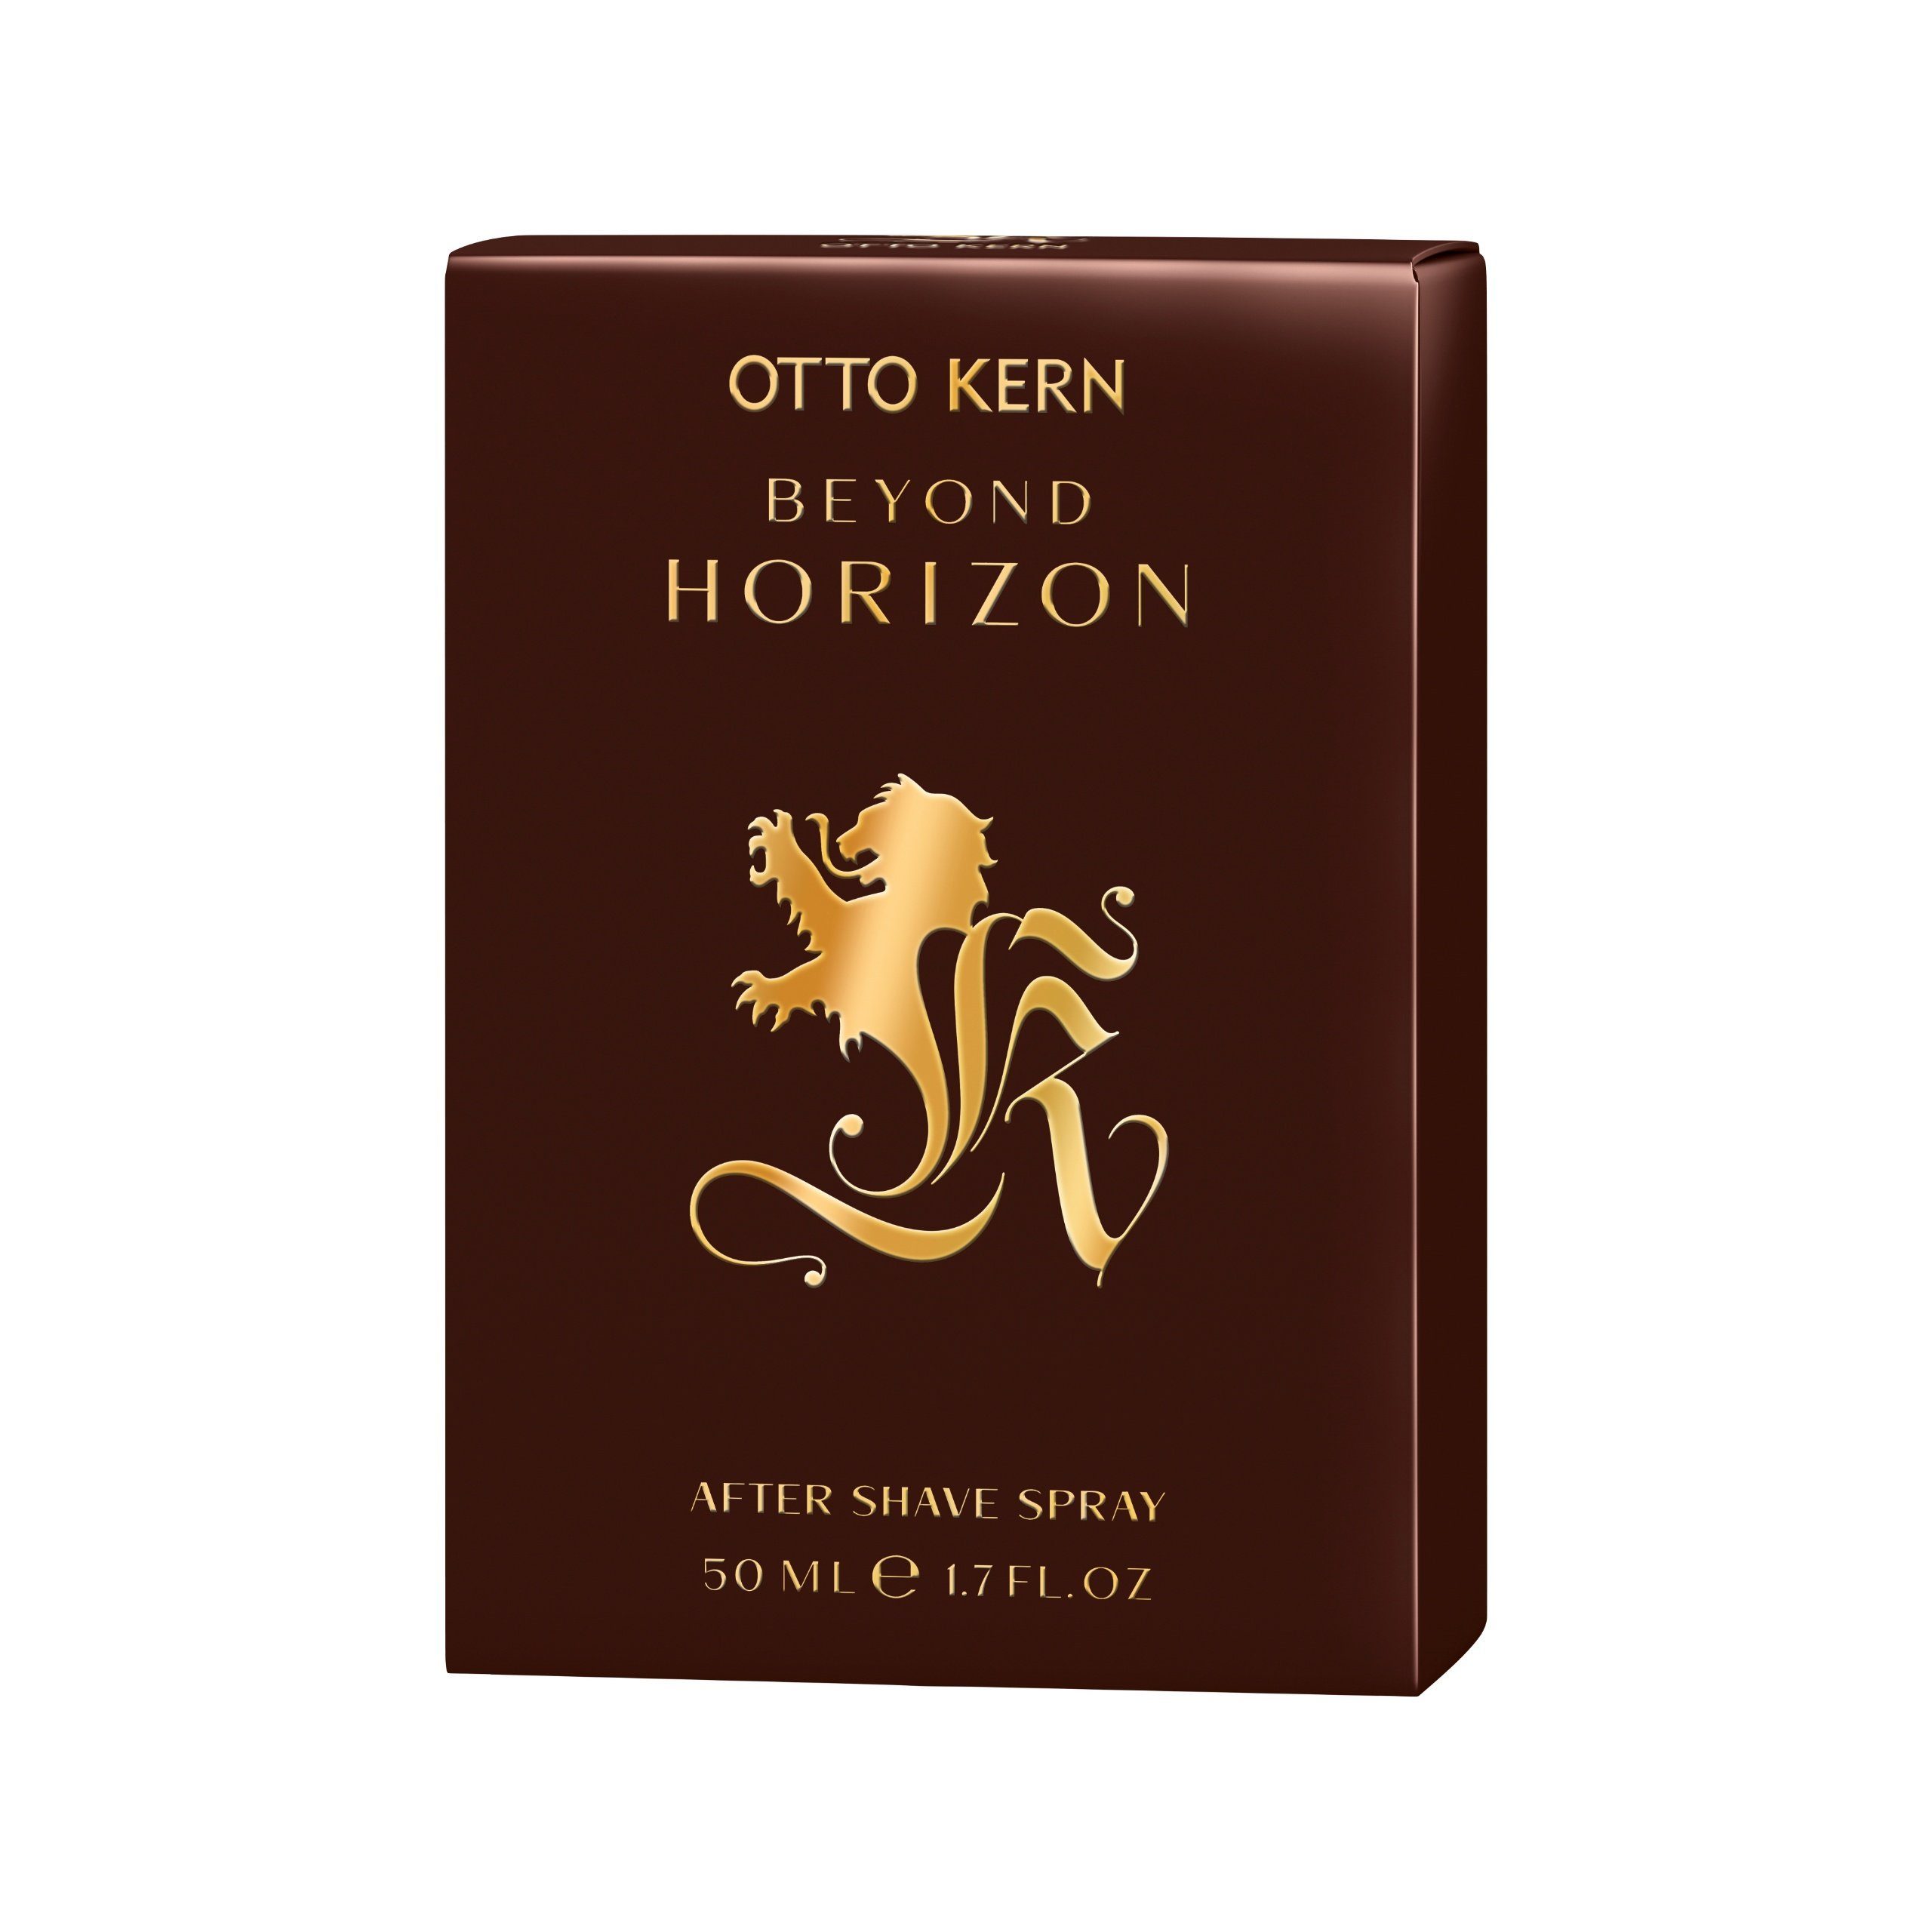 Otto Kern Kern Gesichts-Reinigungslotion Kern ml Beyond Spray Shave 50 After Horizon